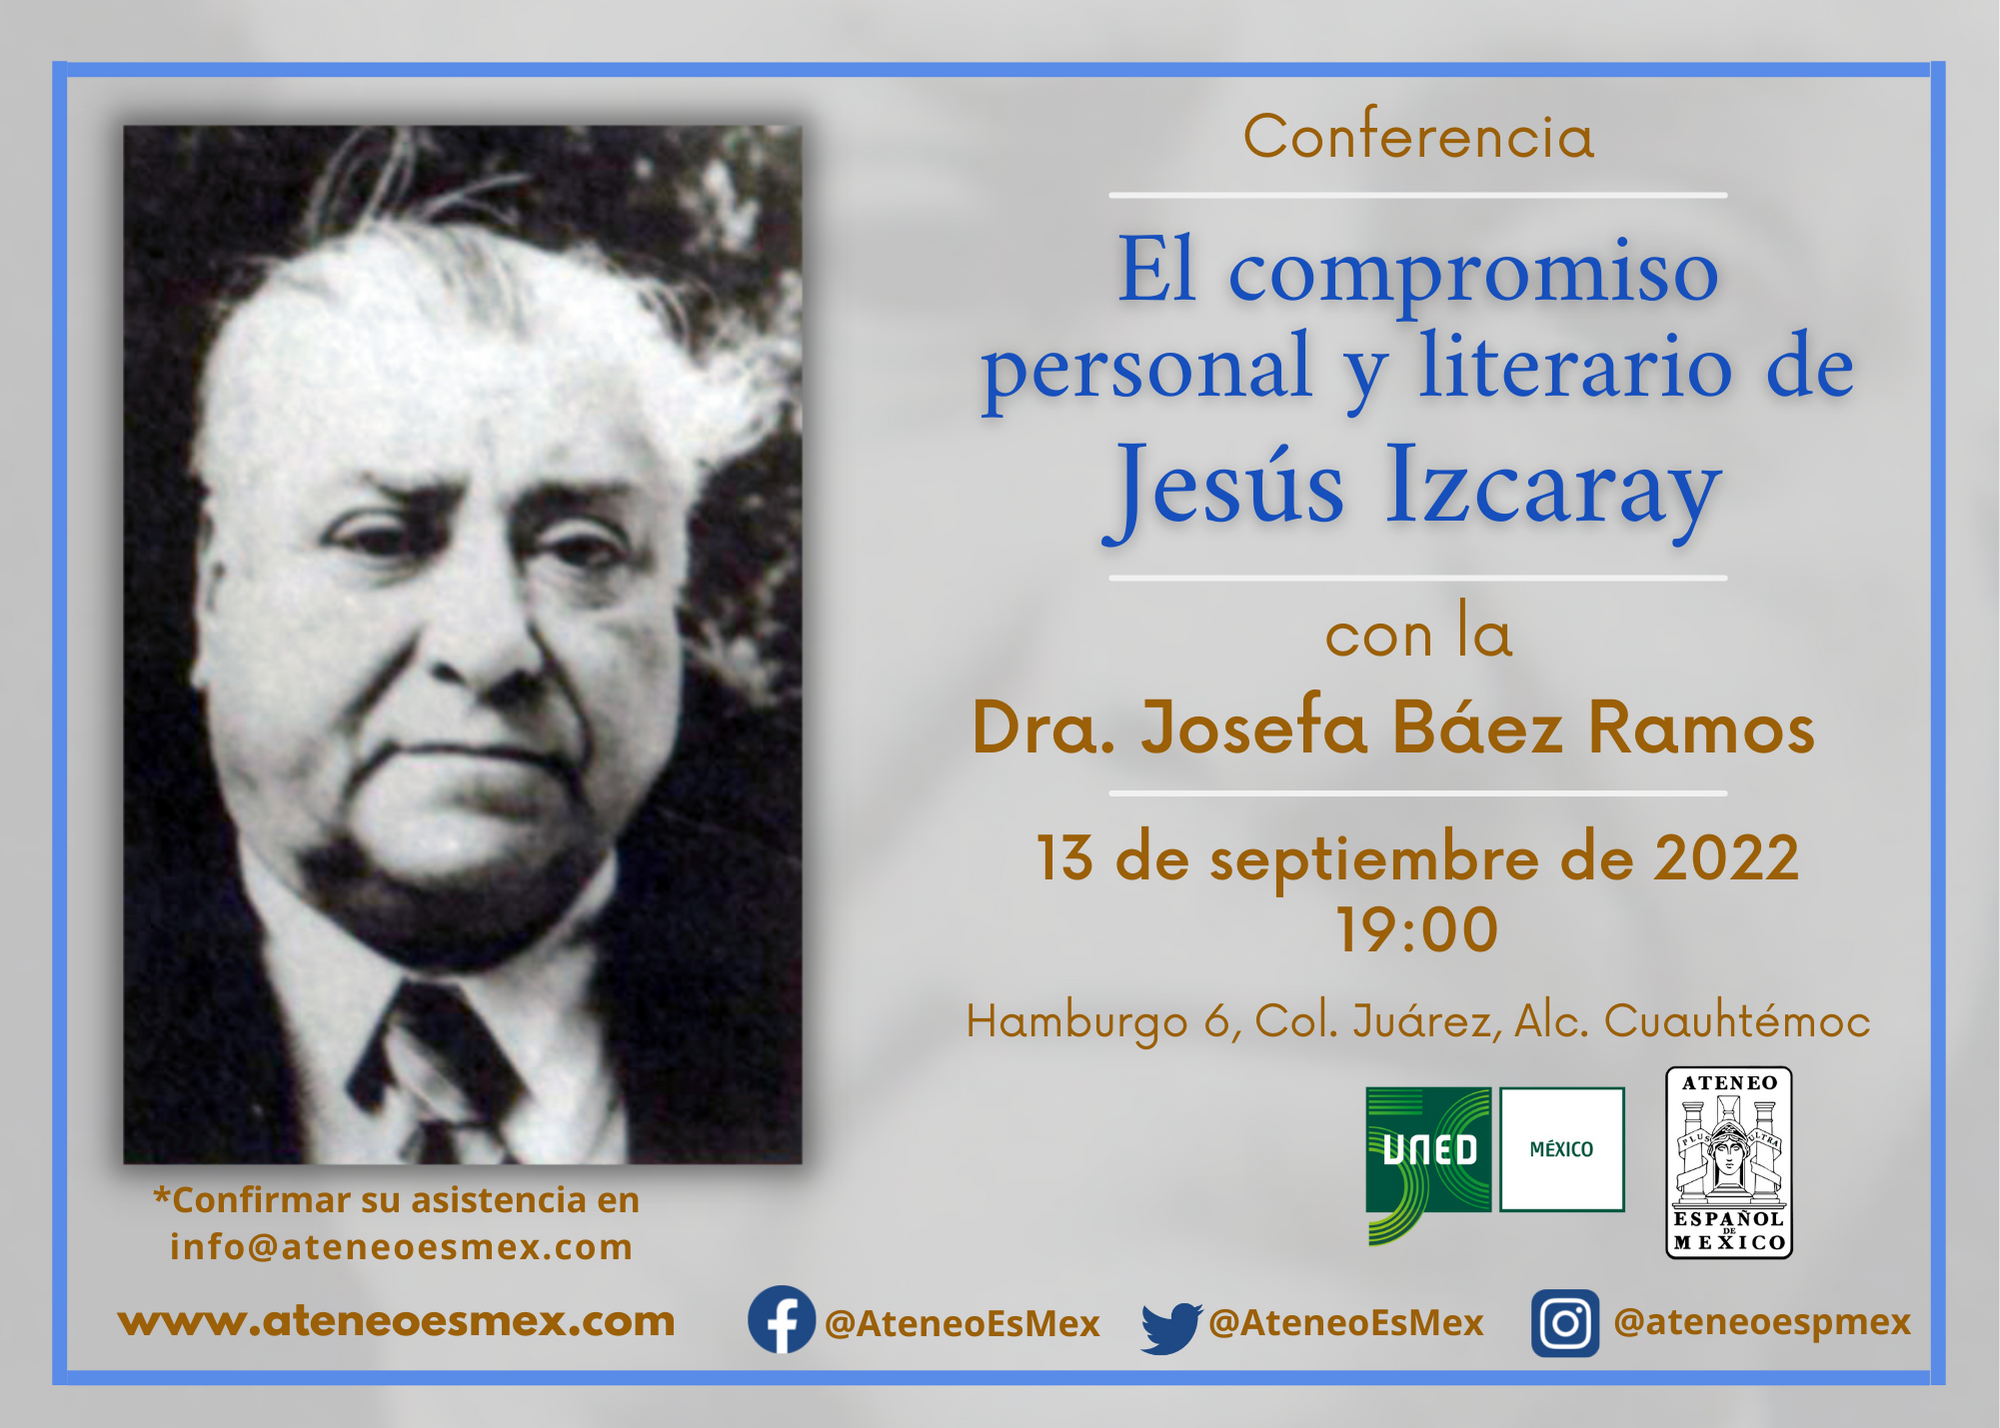 Conferencia. "El compromiso personal y literario de Jesús Izcaray". Imparte: Dra. Josefa Báez Ramos